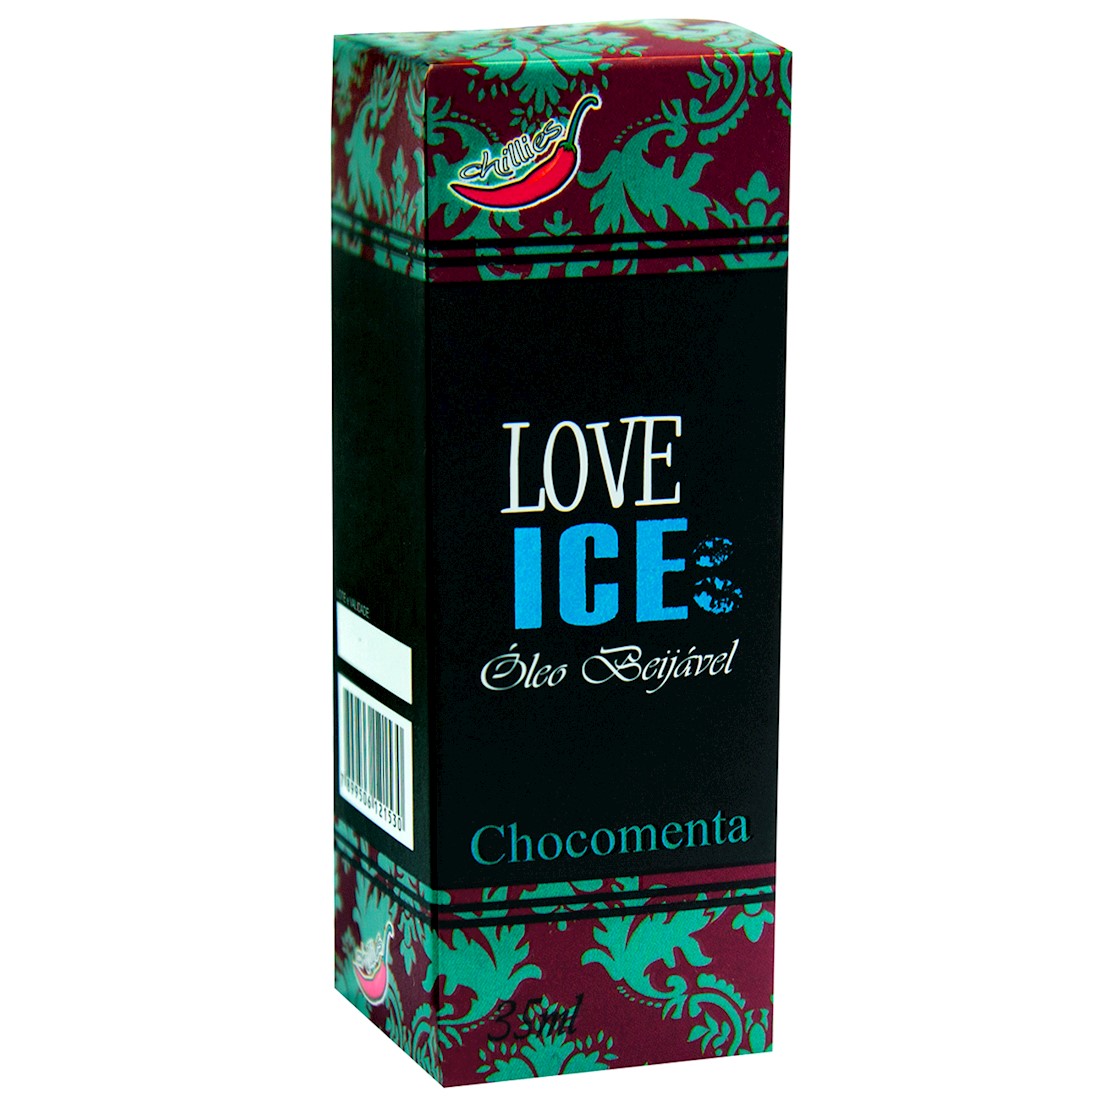 Love Ice Chocomenta Chillies 35ml - C135